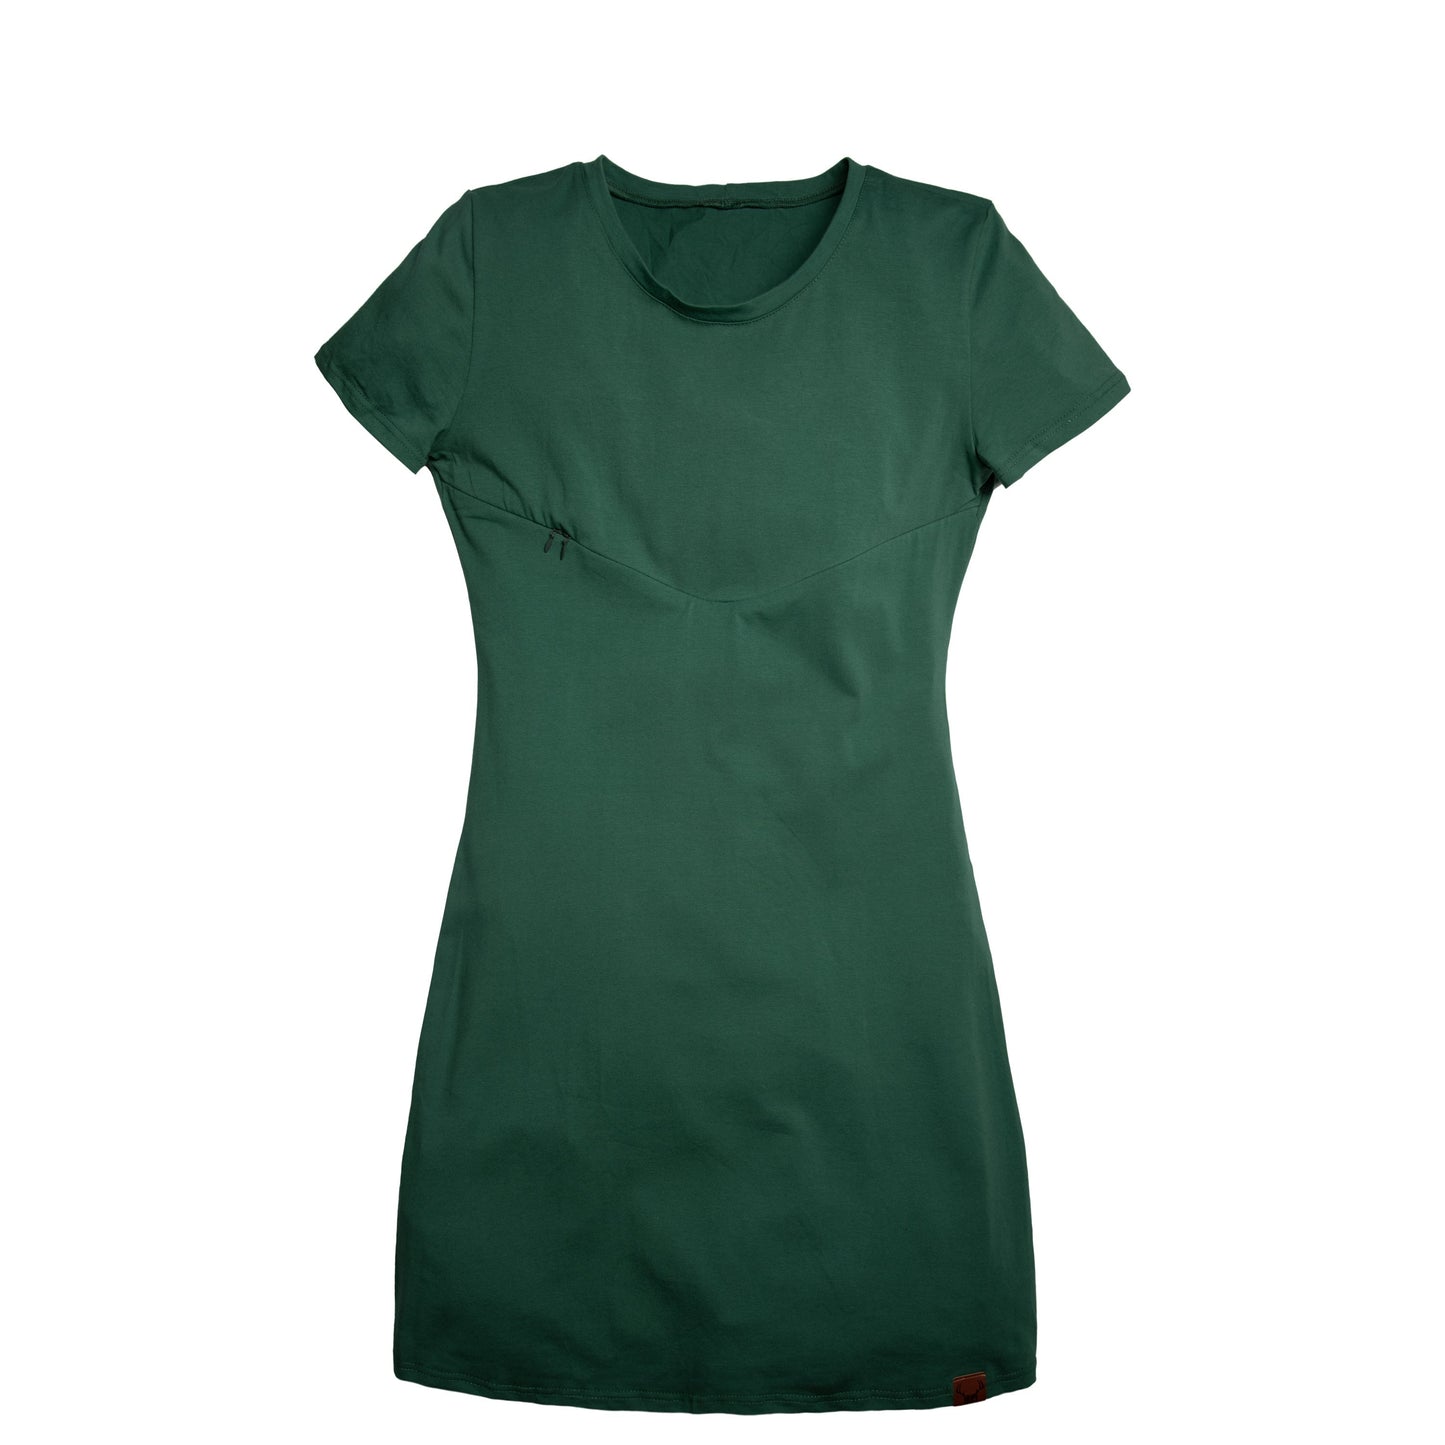 SMALL - VERT CACTUS - robe maternité, allaitement, postpartum sans capuchon - Léger défaut ( réf #440 )